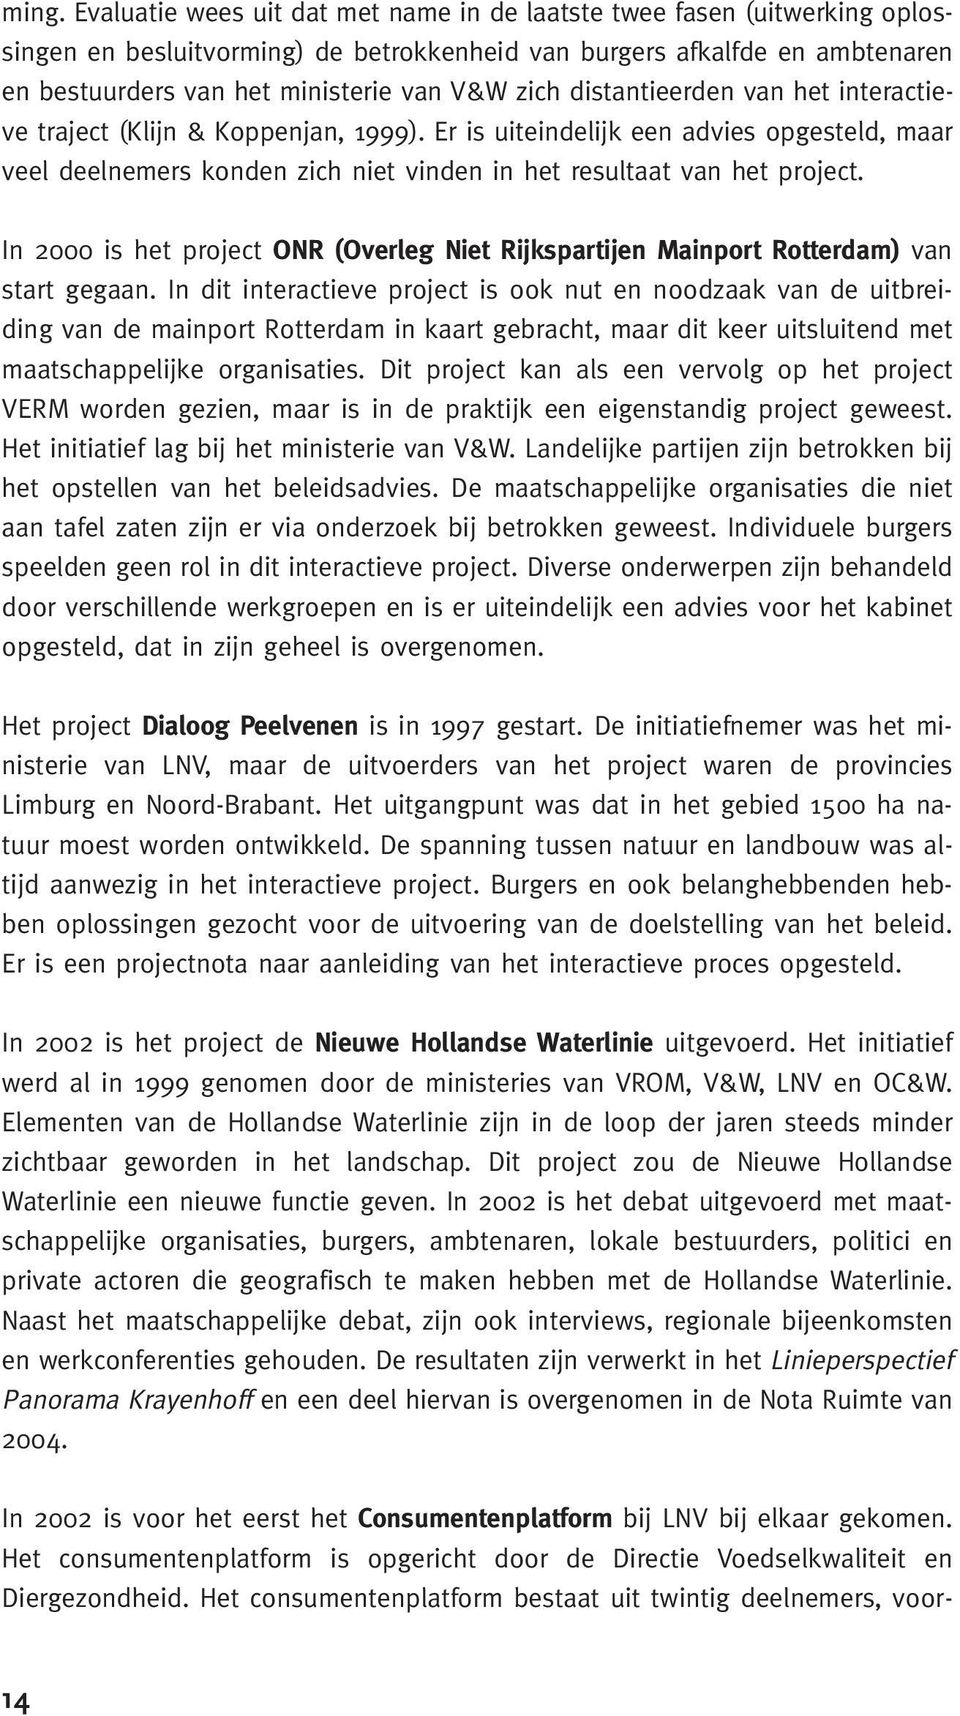 In 2000 is het project ONR (Overleg Niet Rijkspartijen Mainport Rotterdam) van start gegaan.